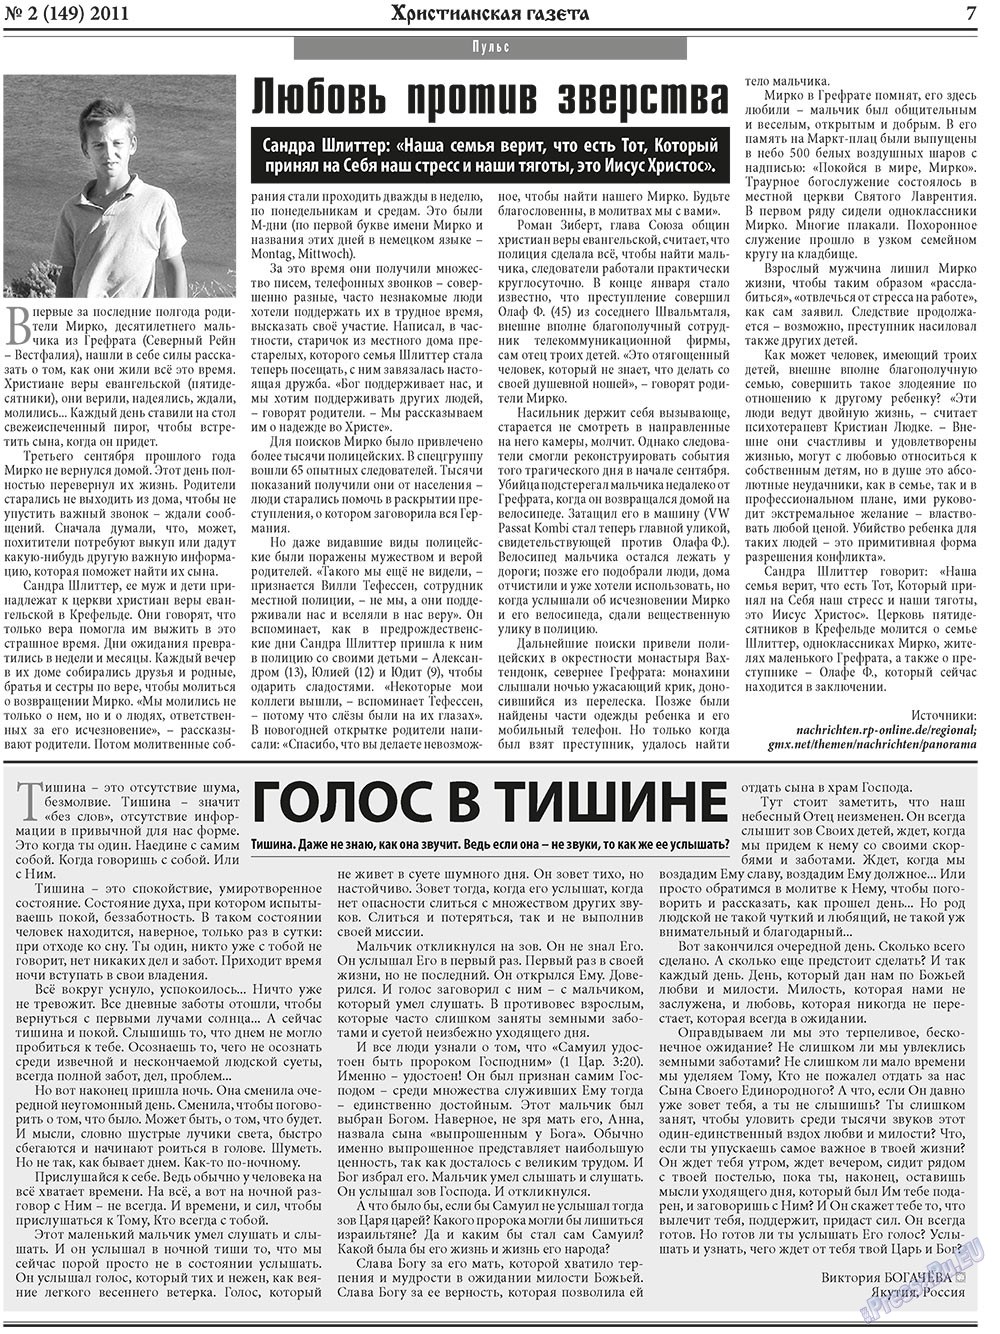 Христианская газета, газета. 2011 №2 стр.7